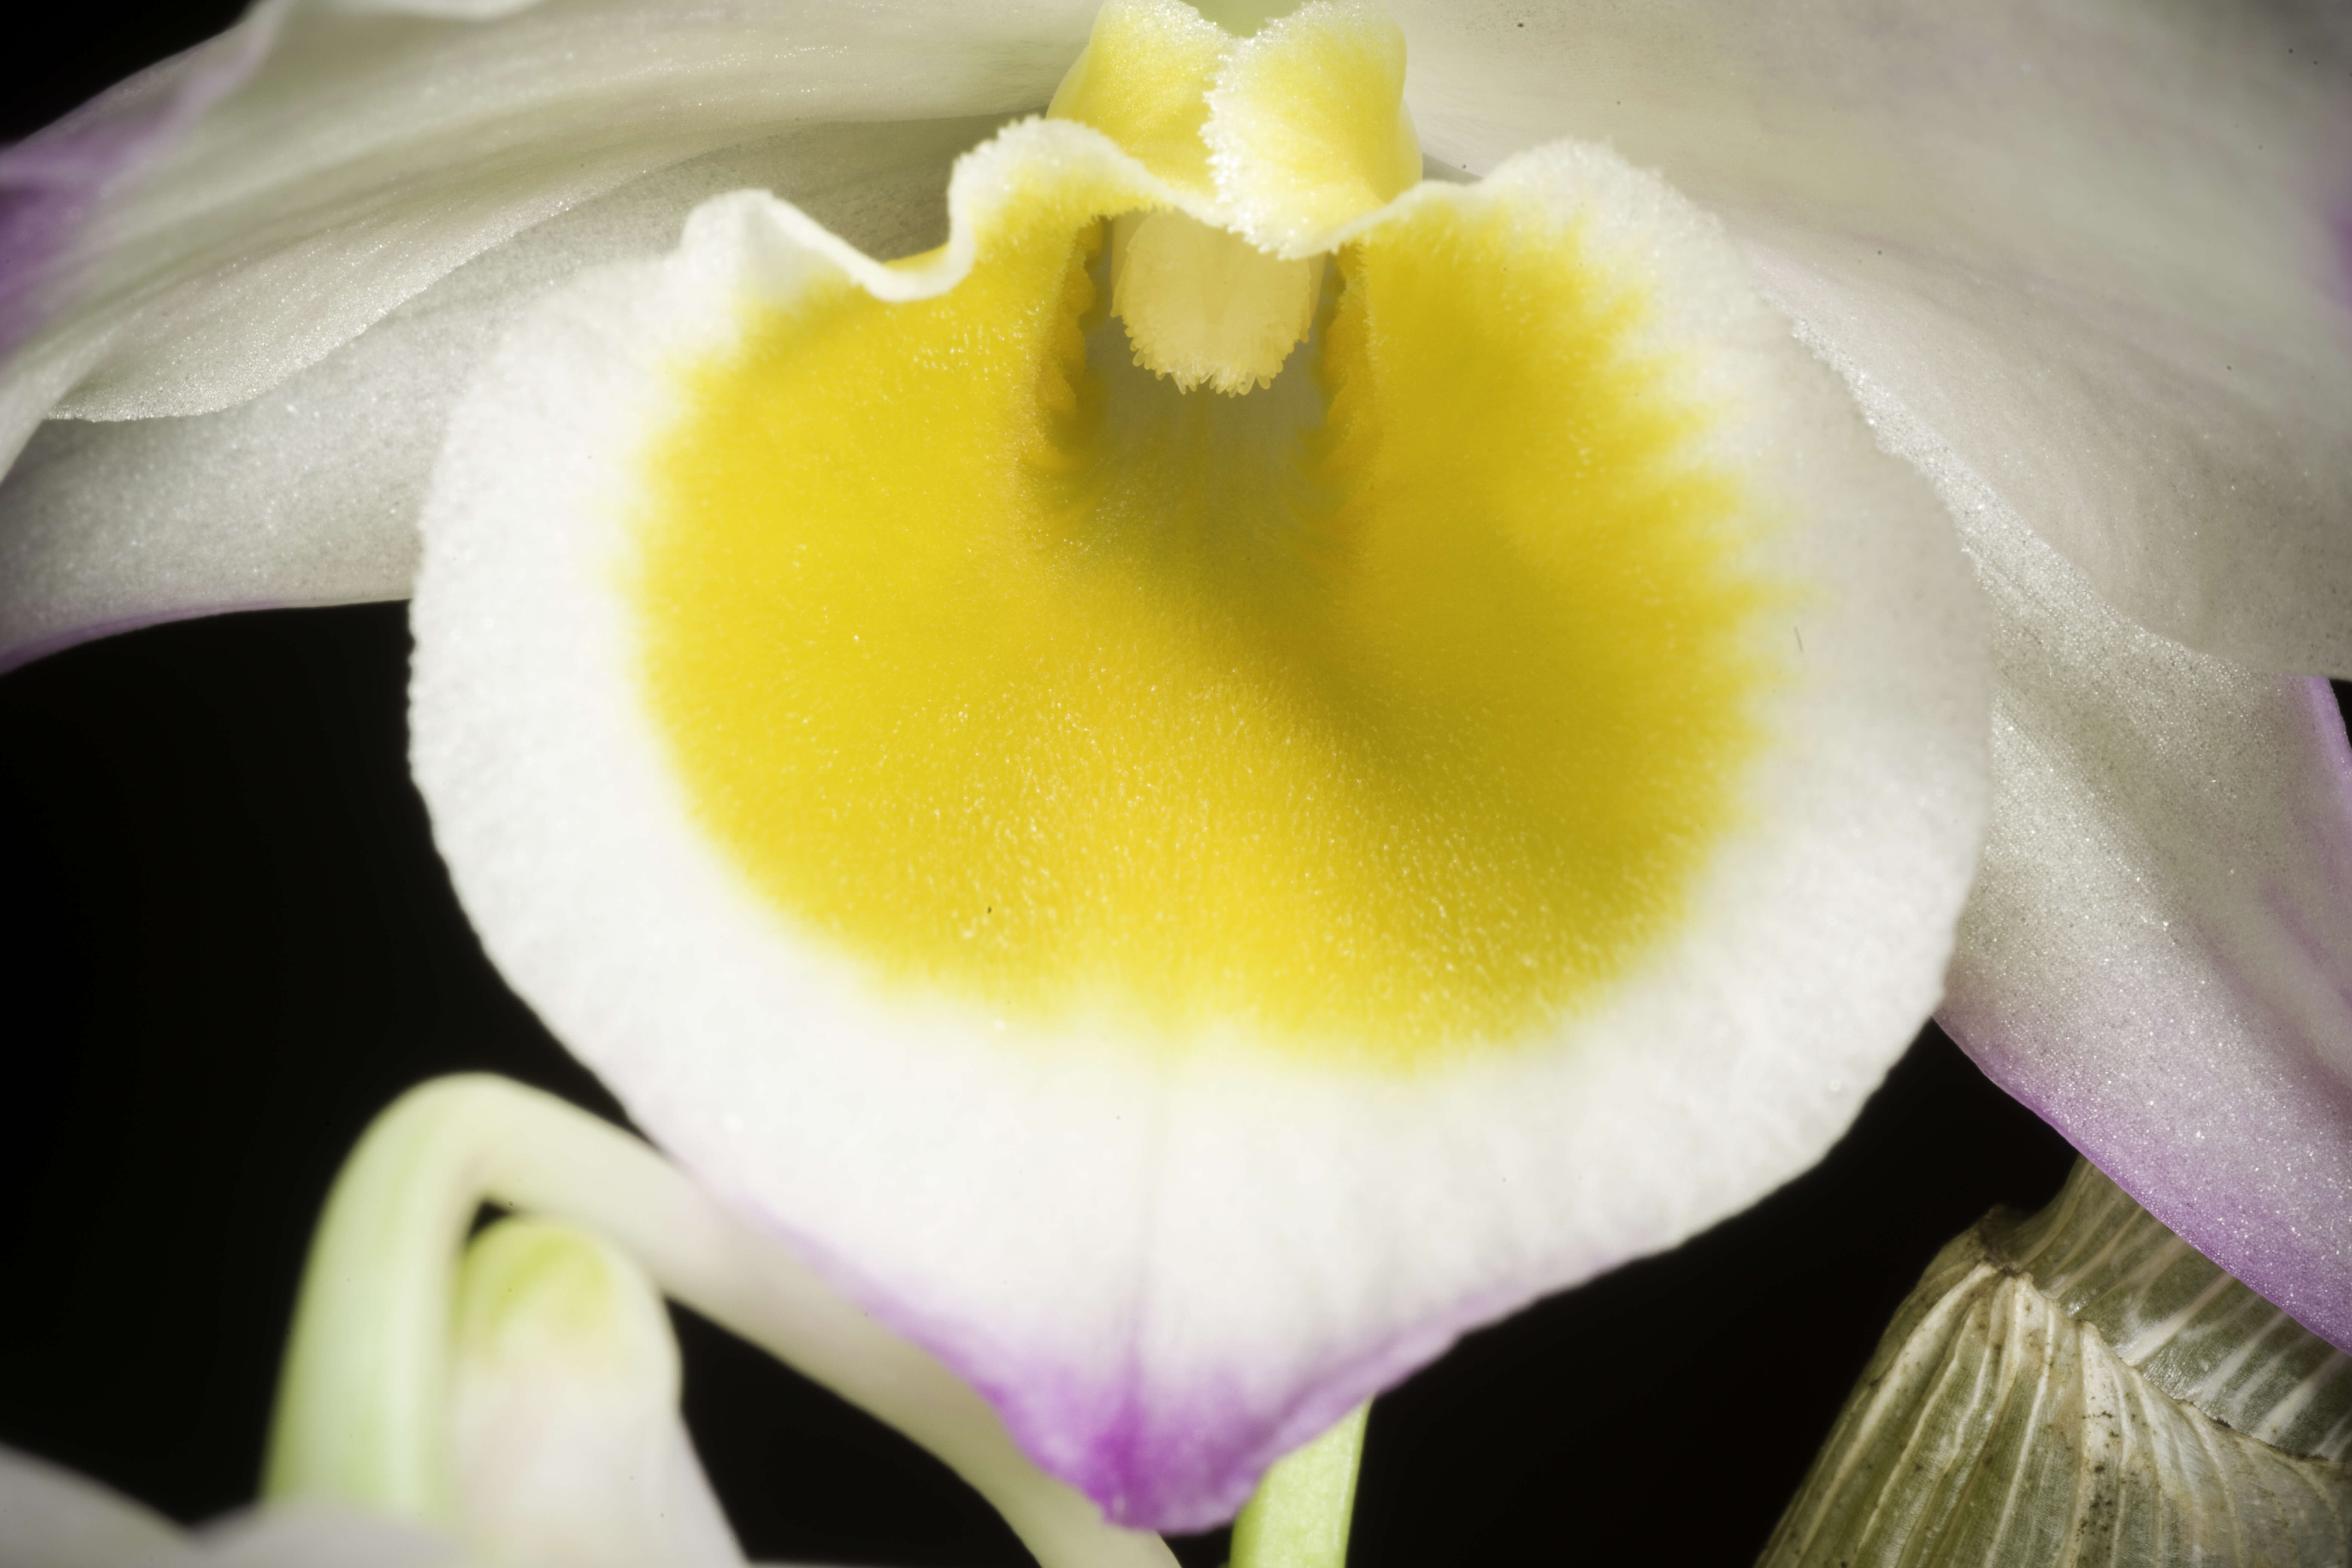 Imagem de Dendrobium gratiosissimum Rchb. fil.